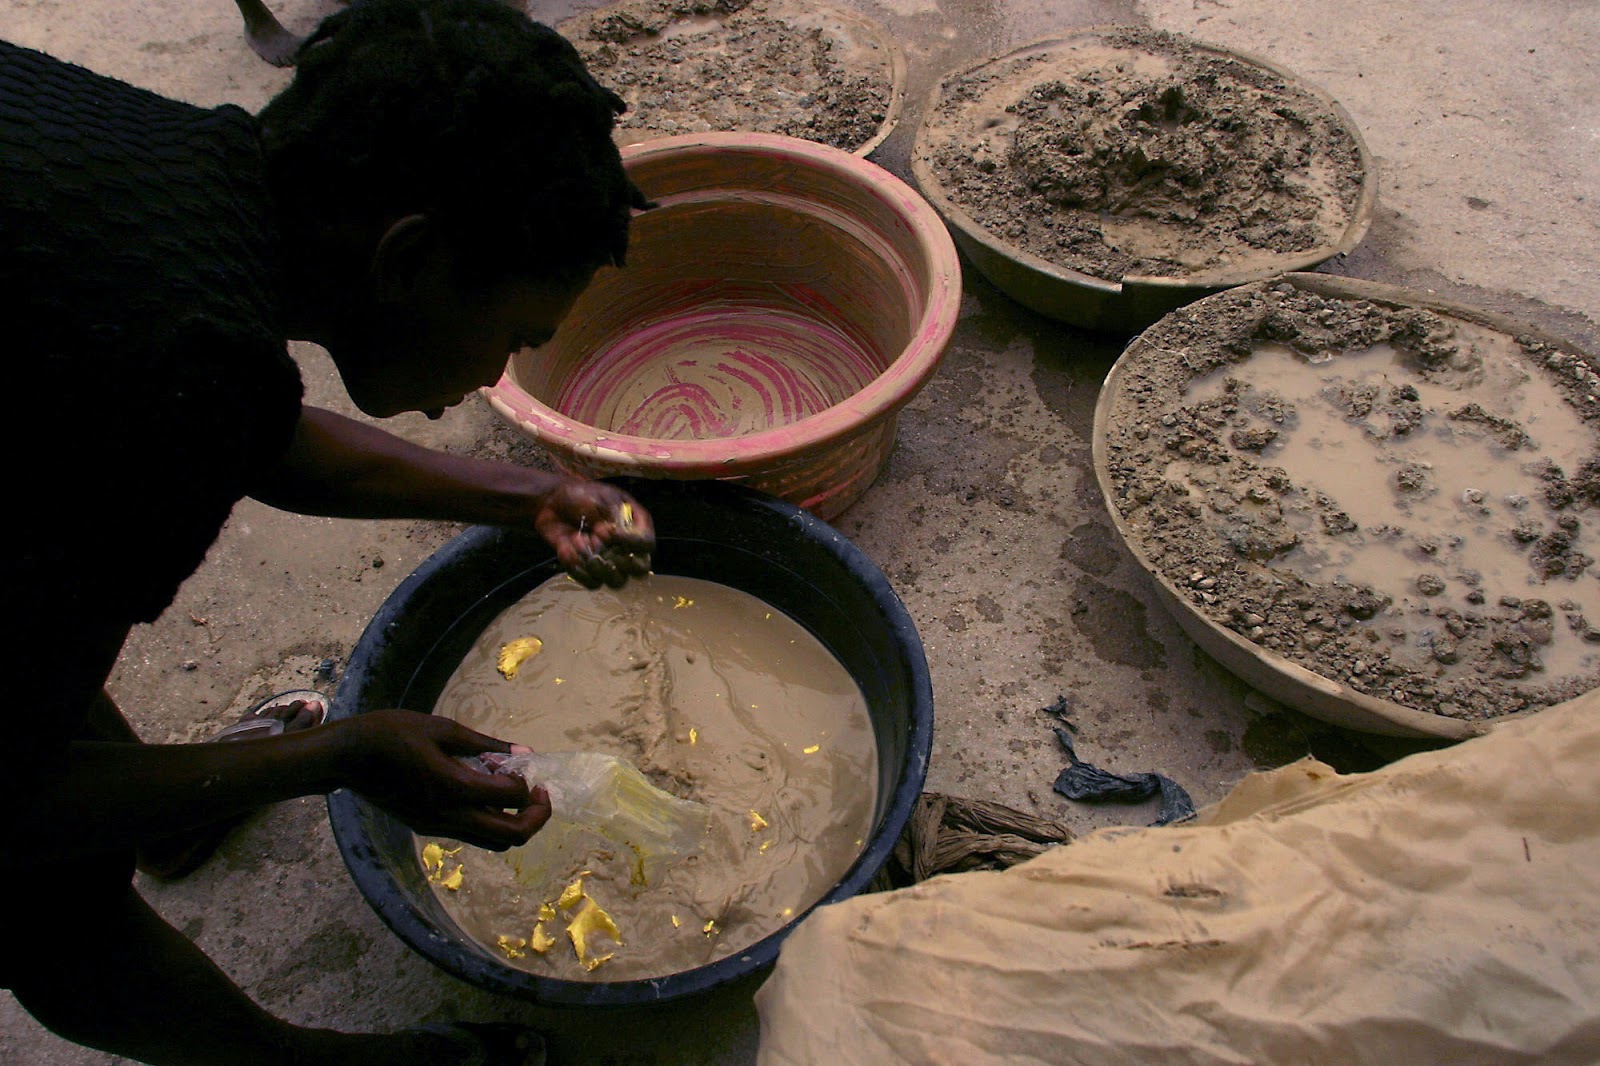 คุกกี้ดินของชาวเฮติ รสชาติแห่งความเหลื่อมล้ำ กับสารอาหารอันน้อยนิด